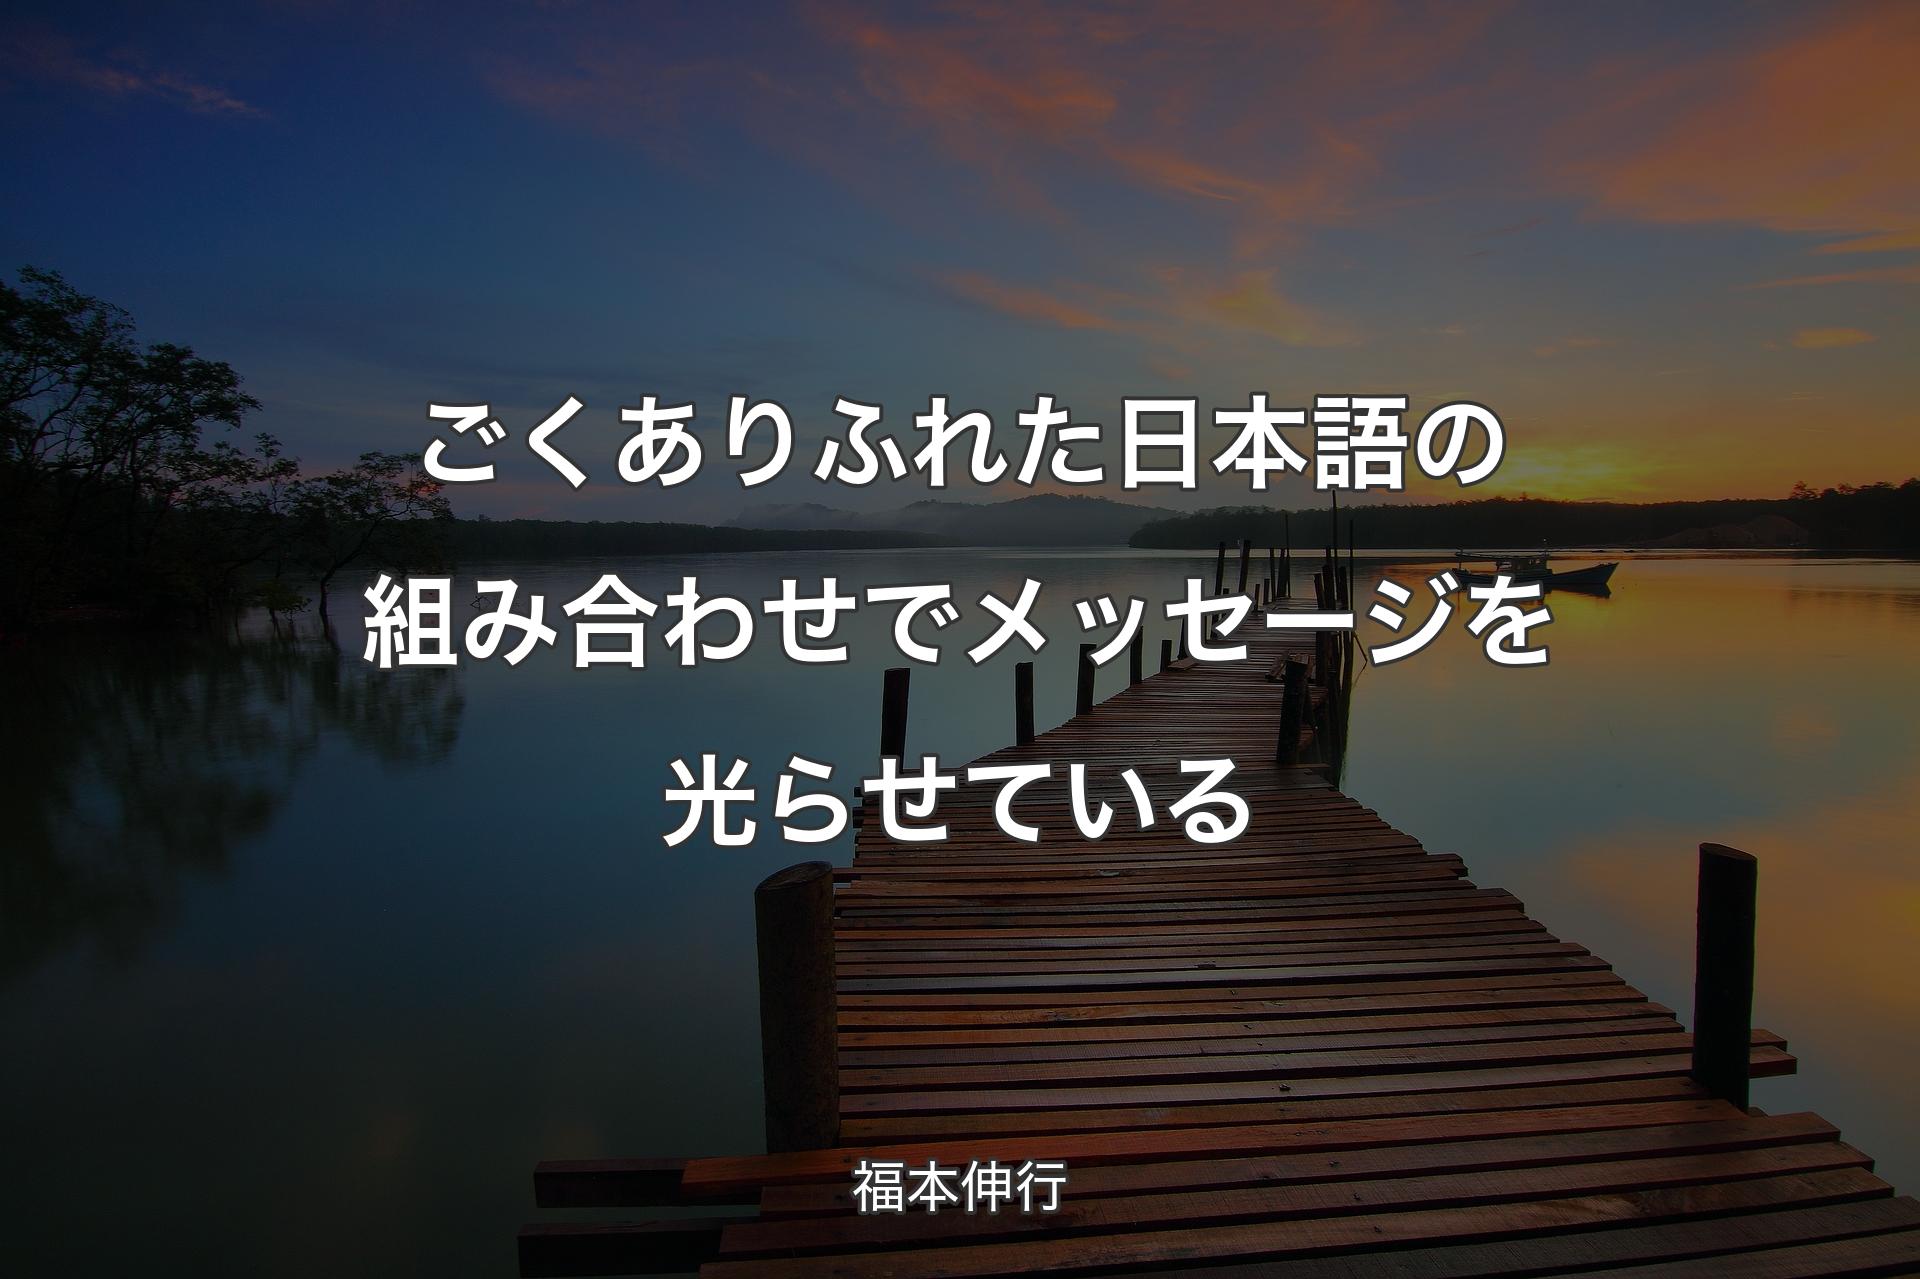 【背景3】ごくありふれた日本語の組み合わせでメッセージを光らせている - 福本伸行